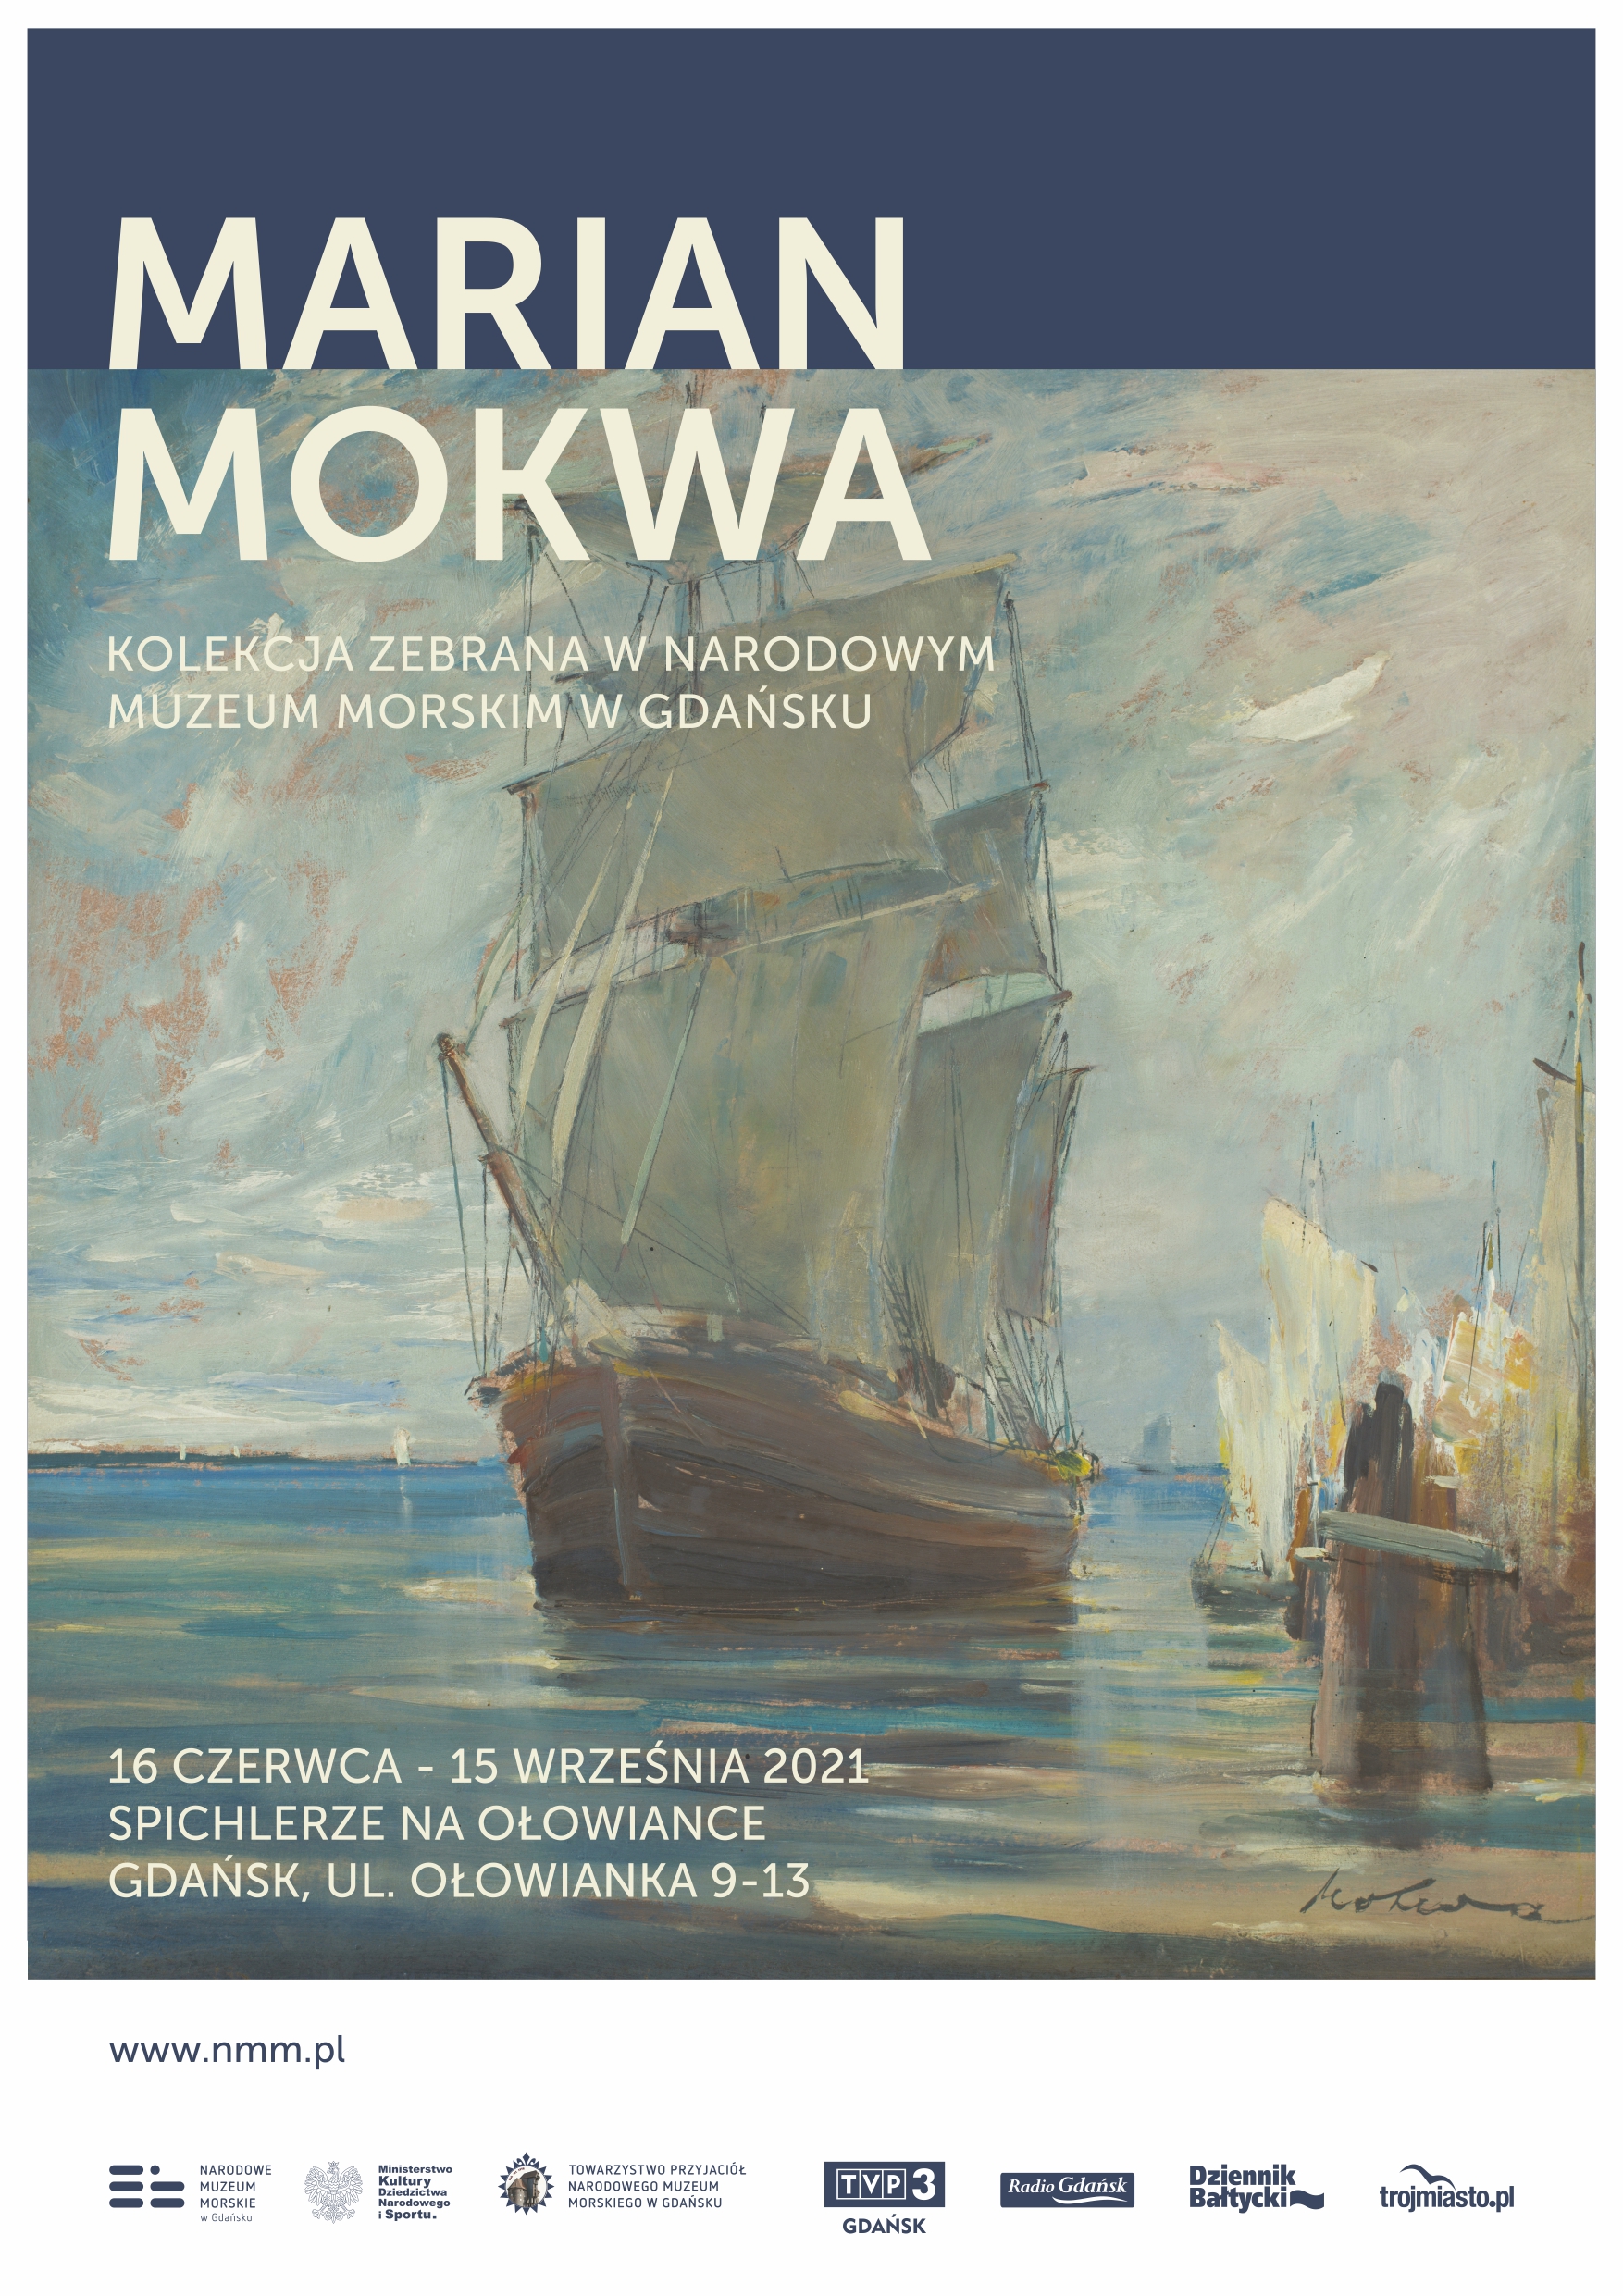 Marian Mokwa. Kolekcja zgromadzona w Narodowym Muzeum Morskim w Gdańsku